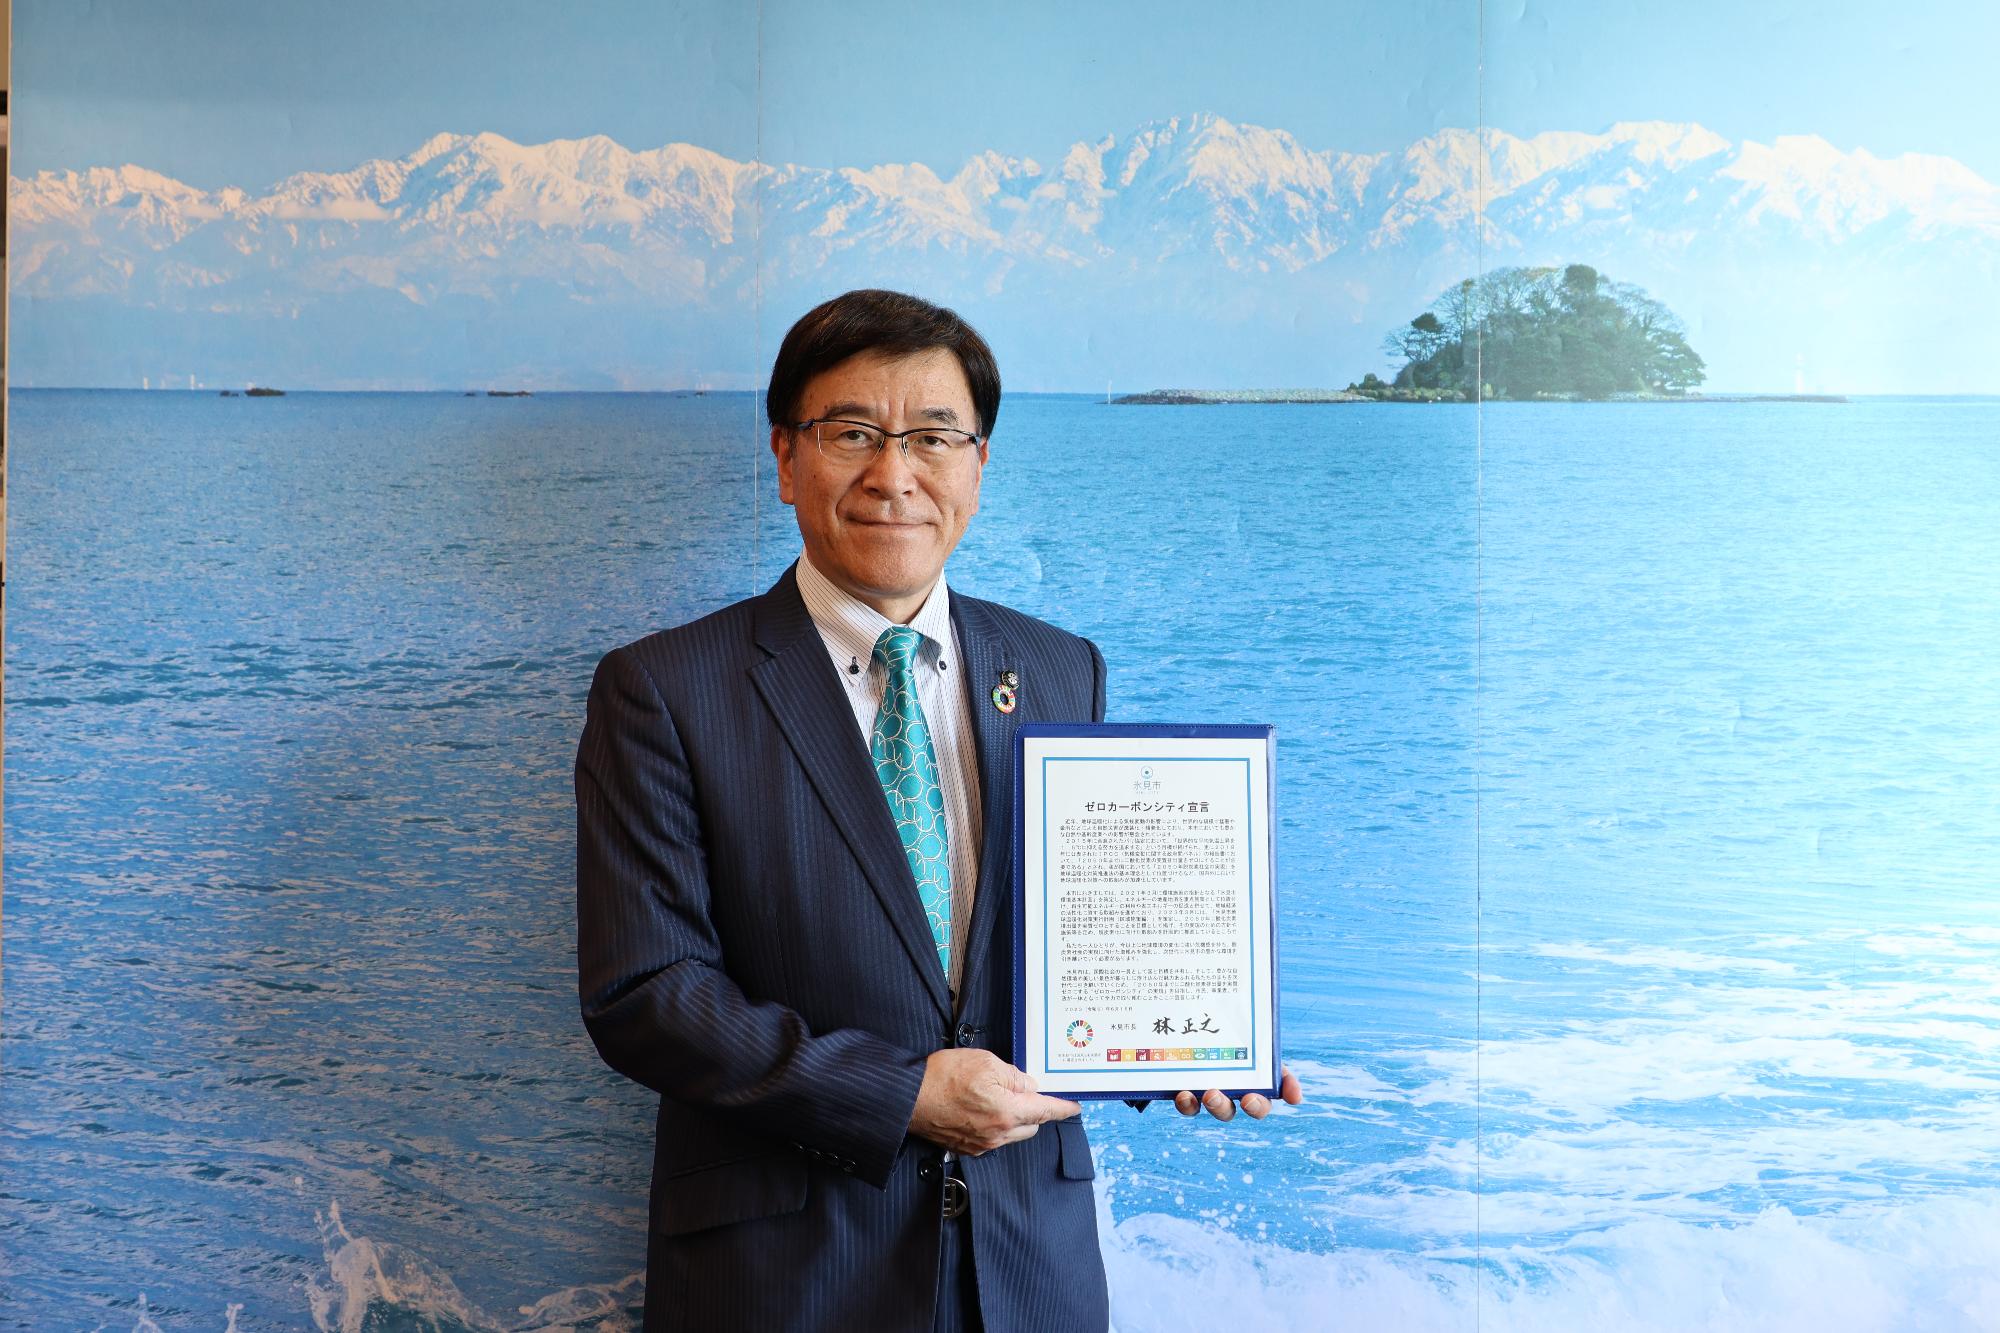 氷見市ゼロカーボンシティ宣言にて氷見市長と宣言書の画像